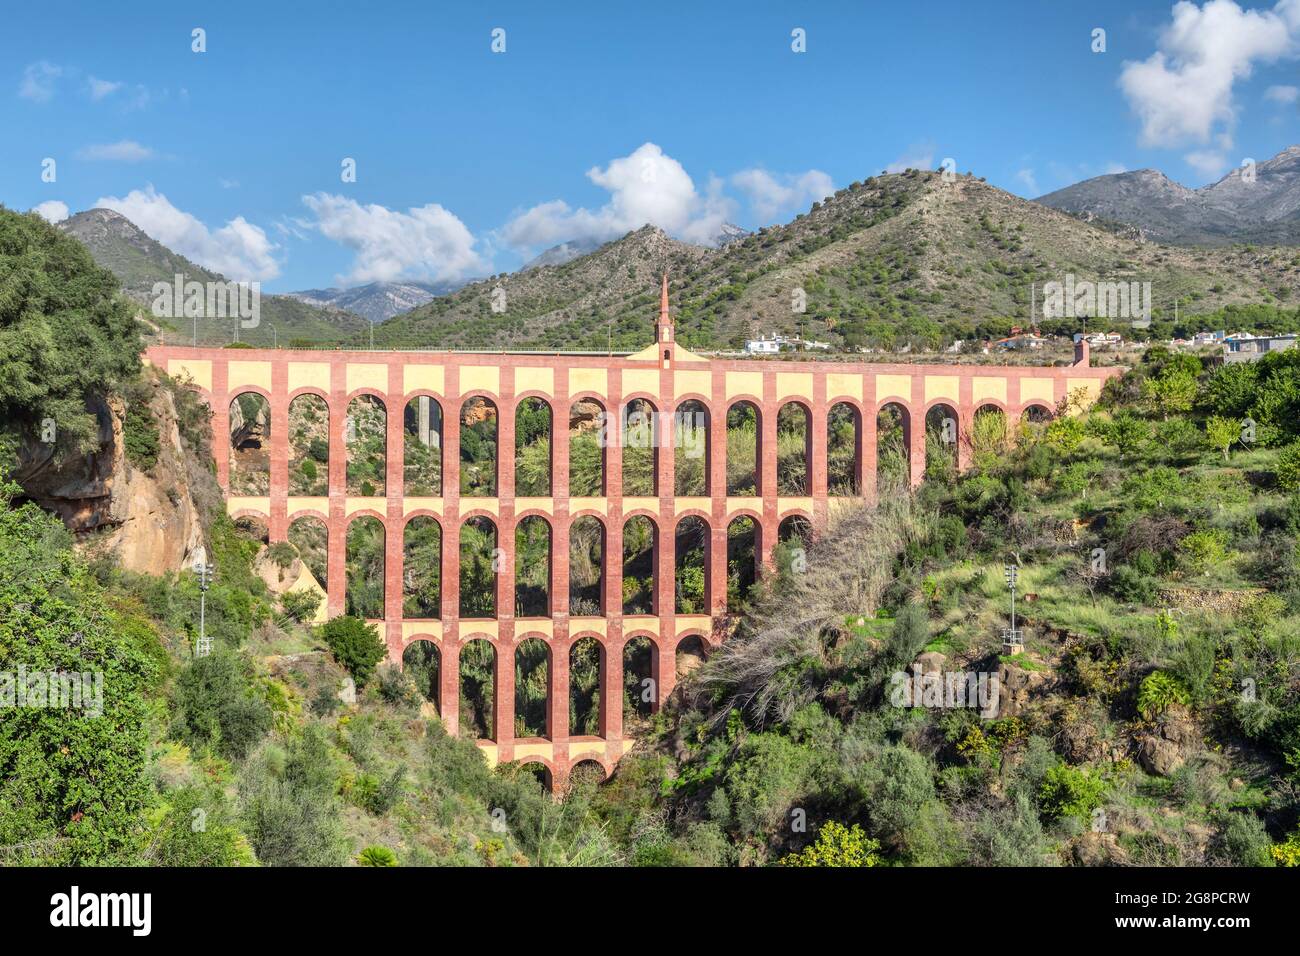 Acueducto del Aguila (Aqueduct d'aigle) situé près de Nerja, Andalousie, Espagne Banque D'Images